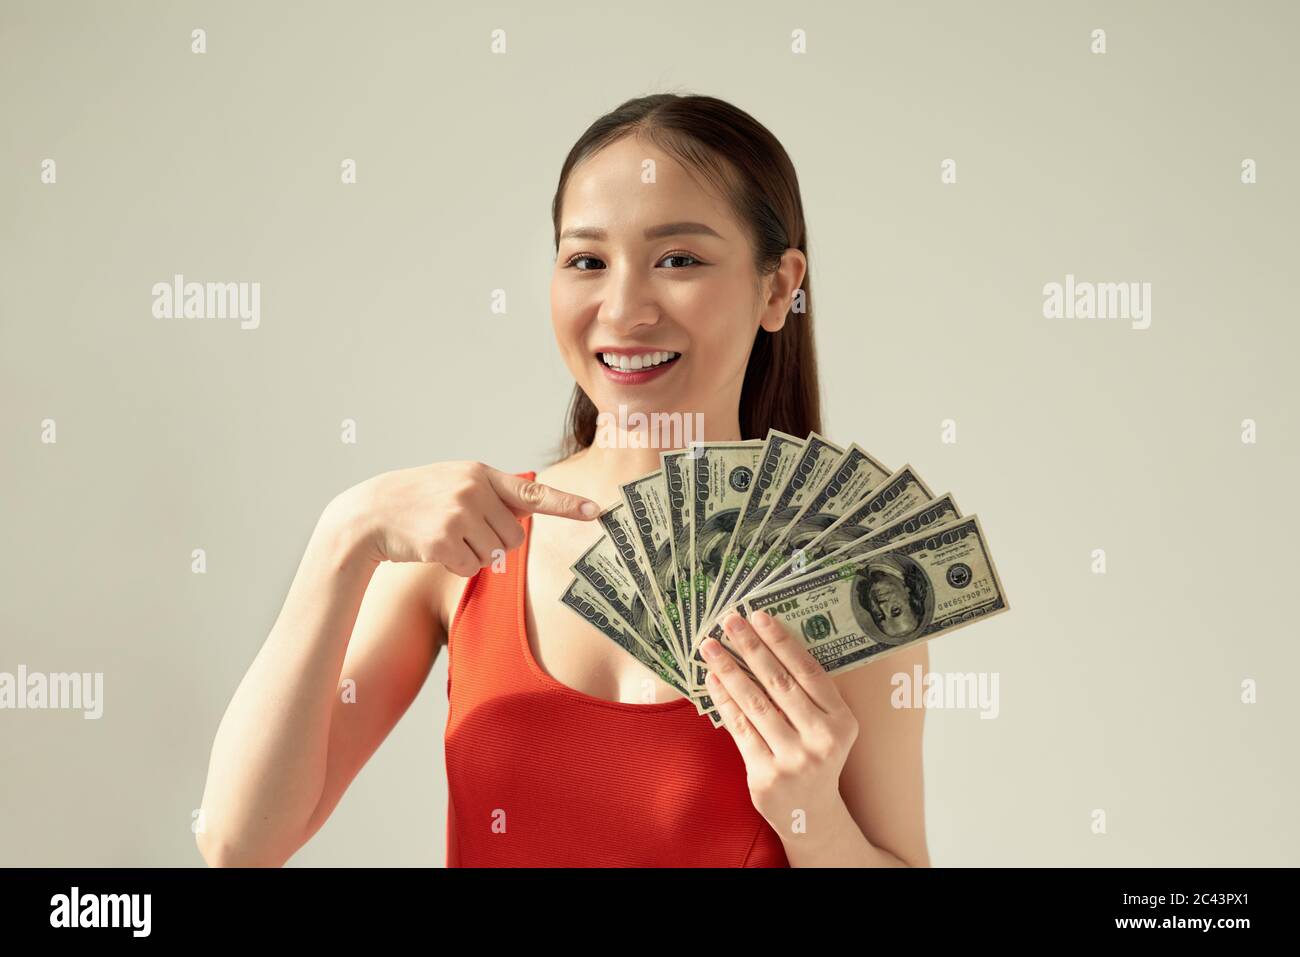 Ritratto di successo donna 20s che tiene lotti di banconote in dollari isolato su sfondo luminoso Foto Stock